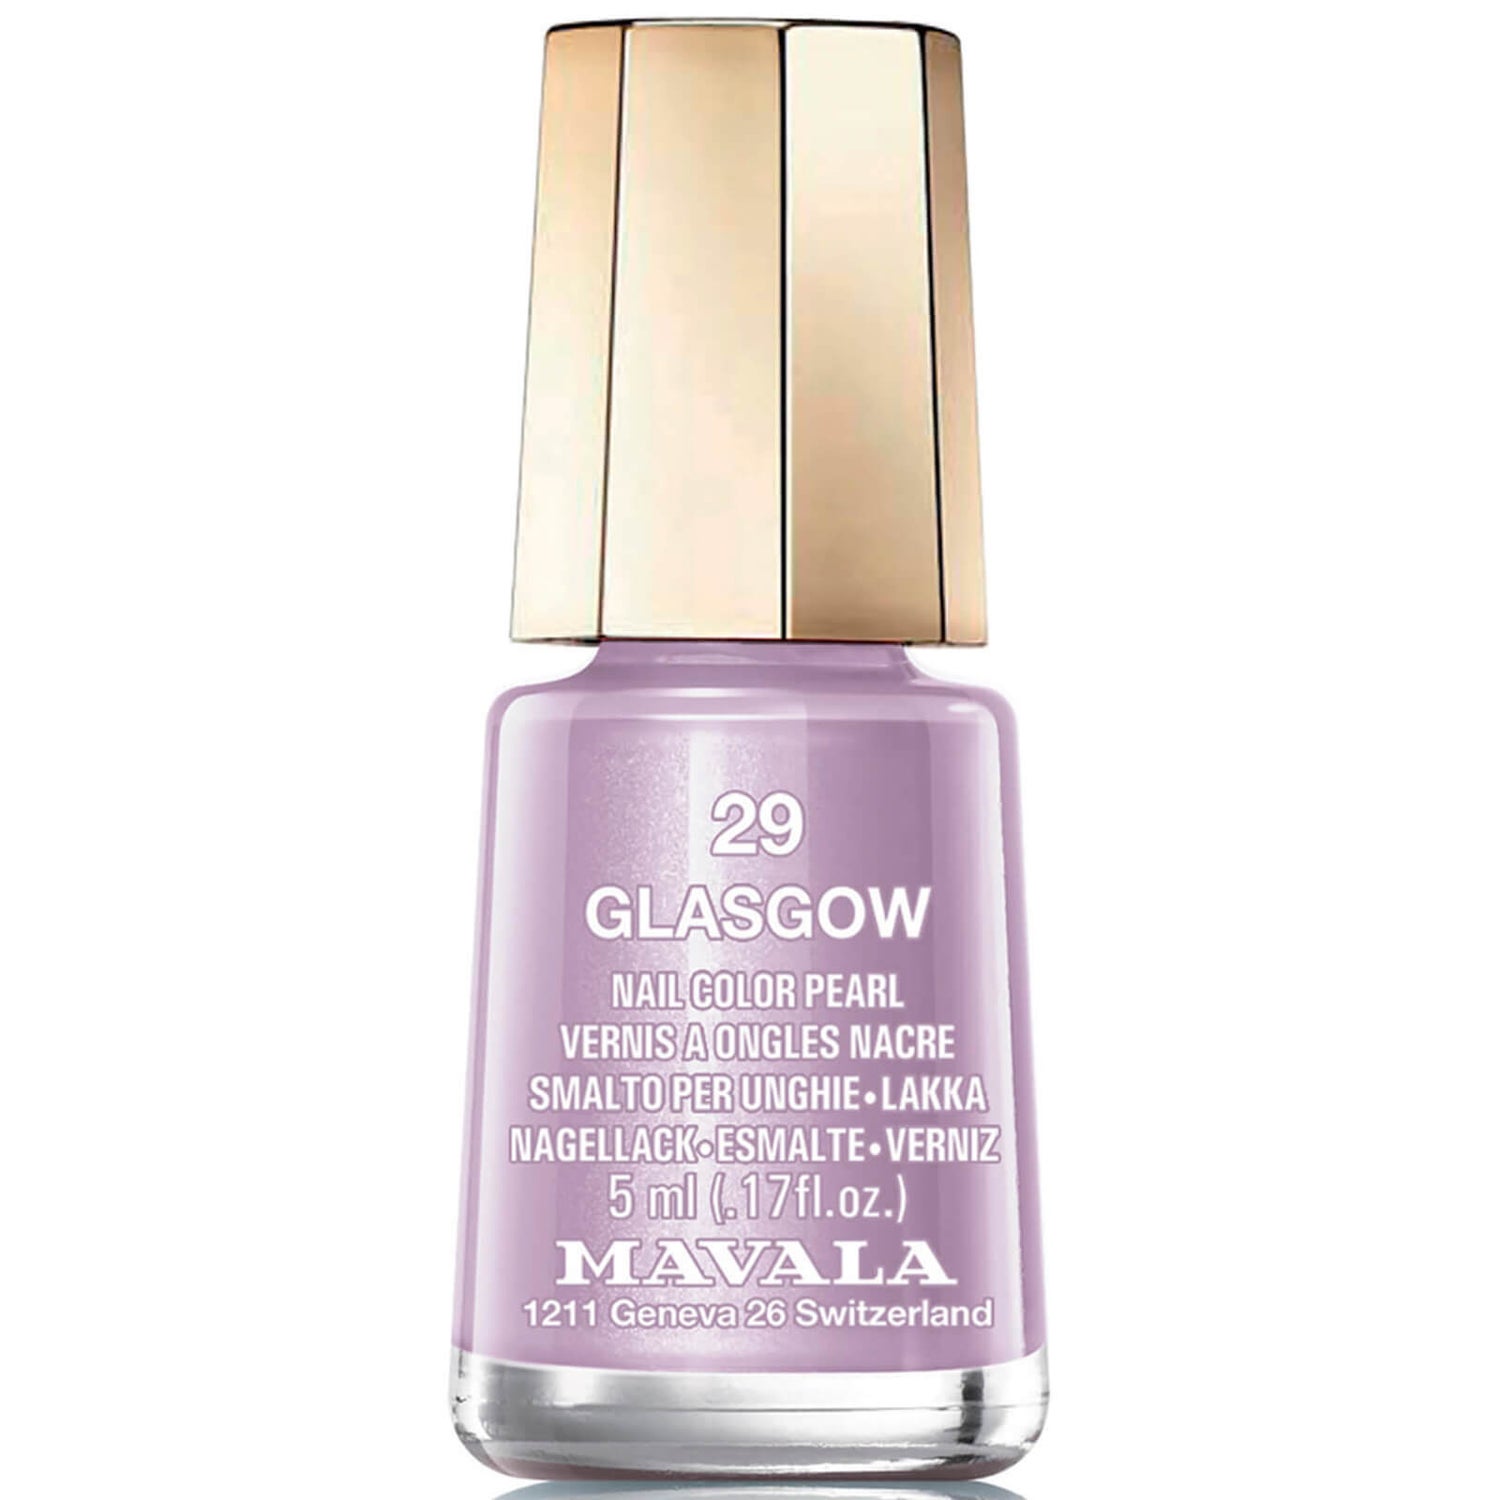 Esmalte de uñas Mavala Glasgow (5ml)